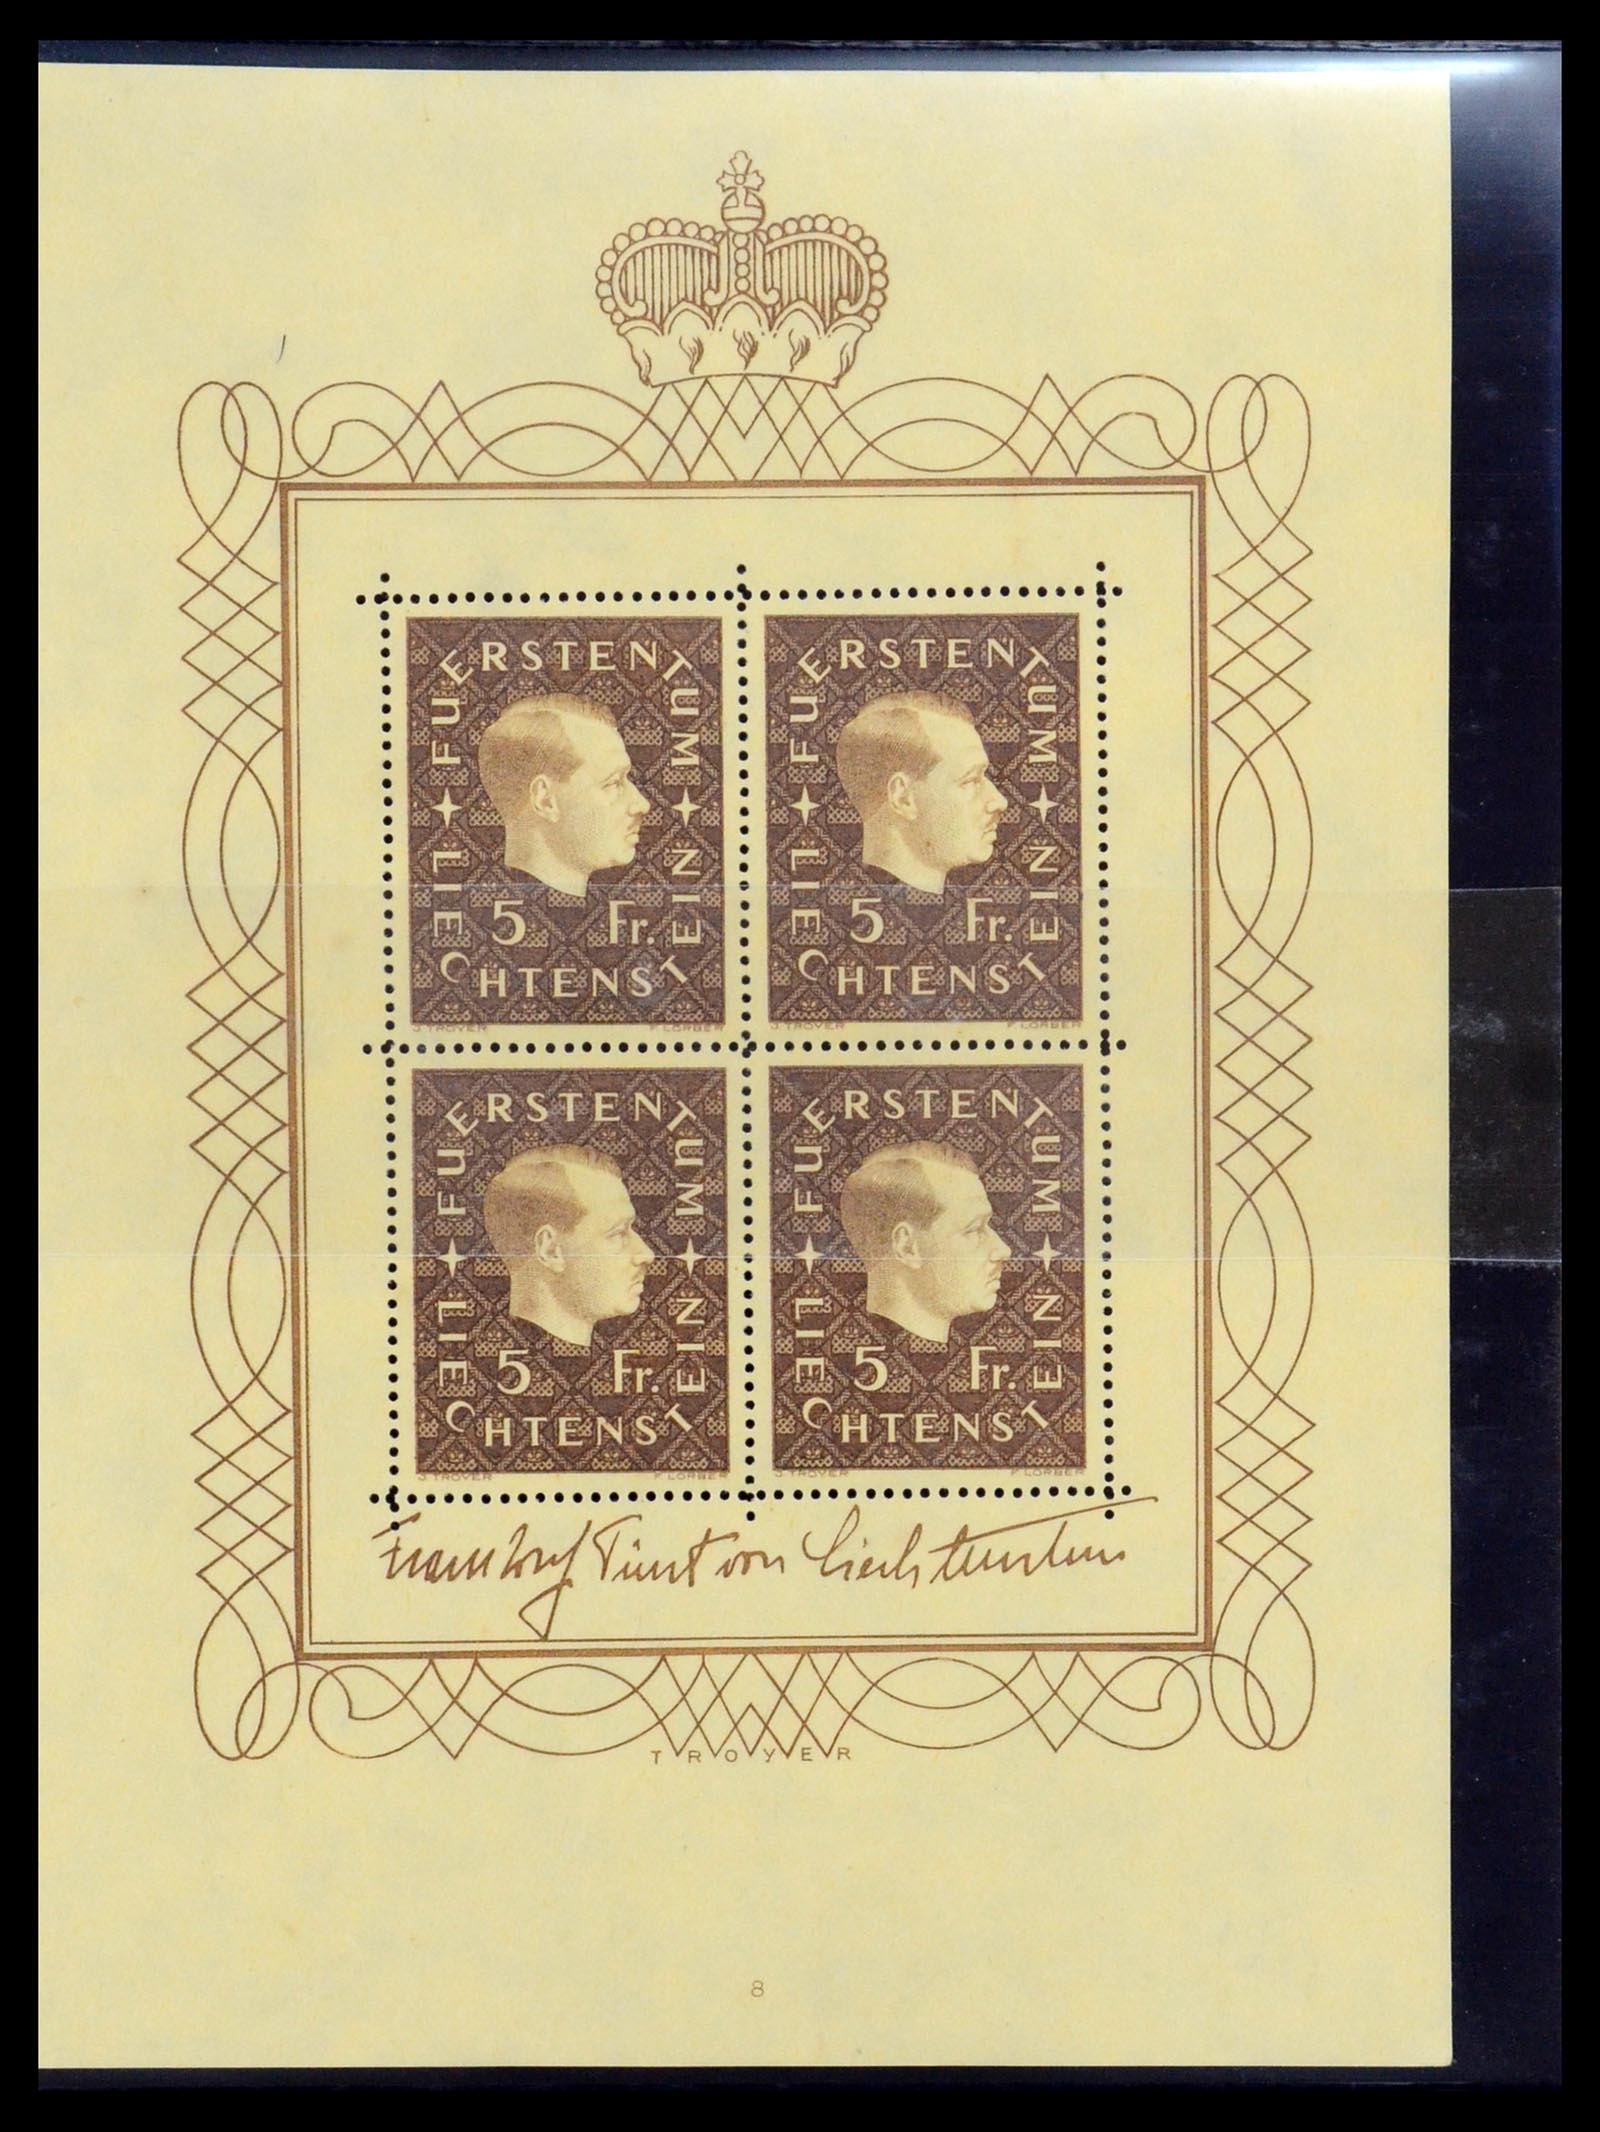 36280 053 - Stamp collection 36280 Liechtenstein souvenir sheets and sheetlets 1934-